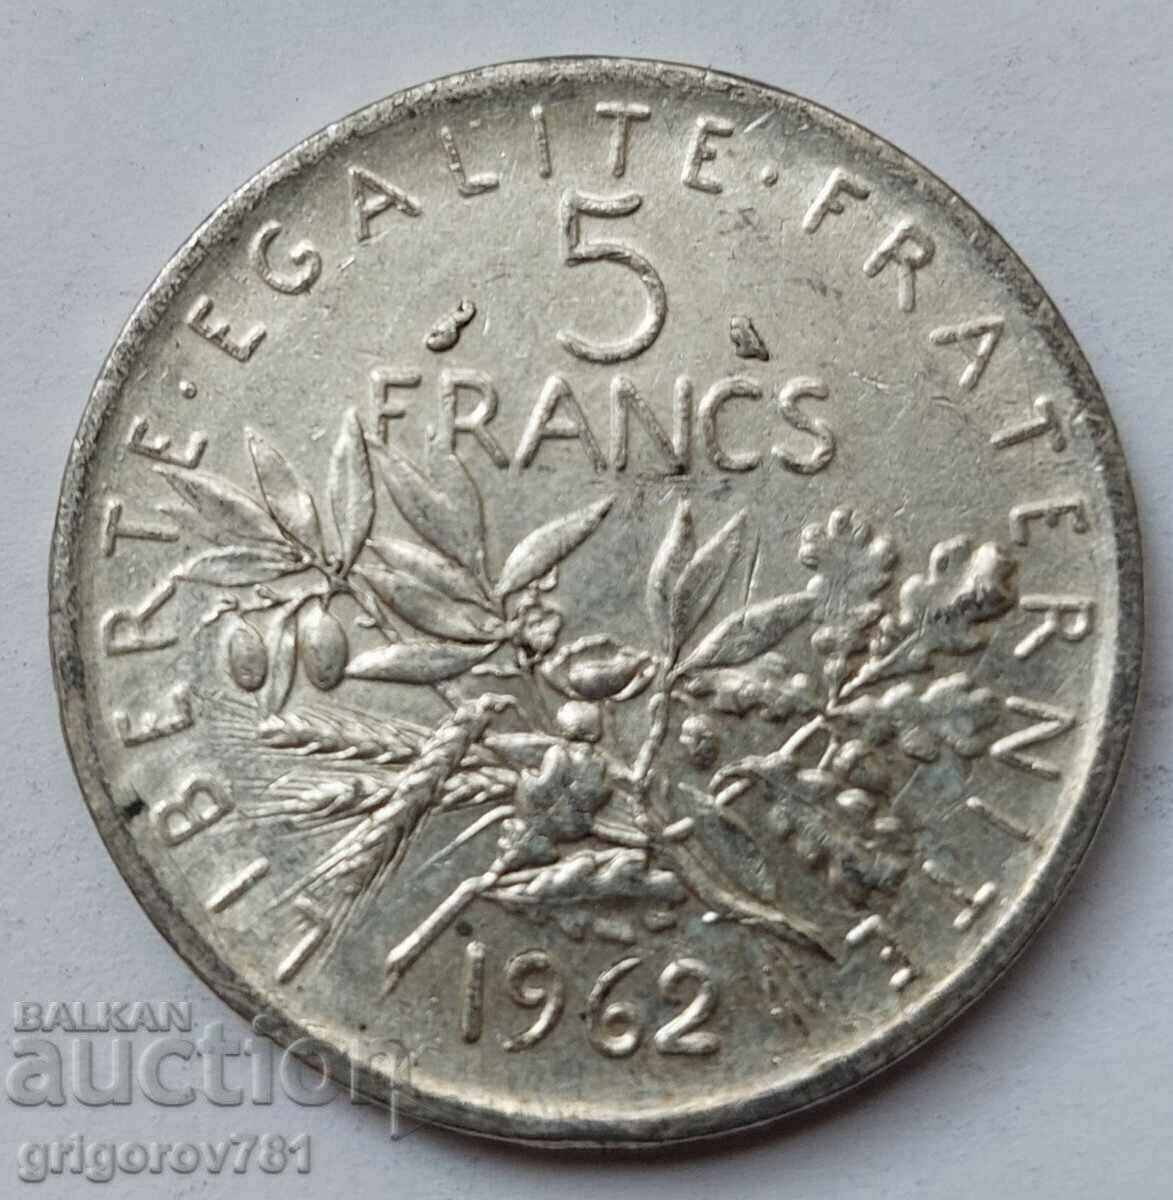 5 Φράγκα Ασήμι Γαλλία 1962 - Ασημένιο νόμισμα #14